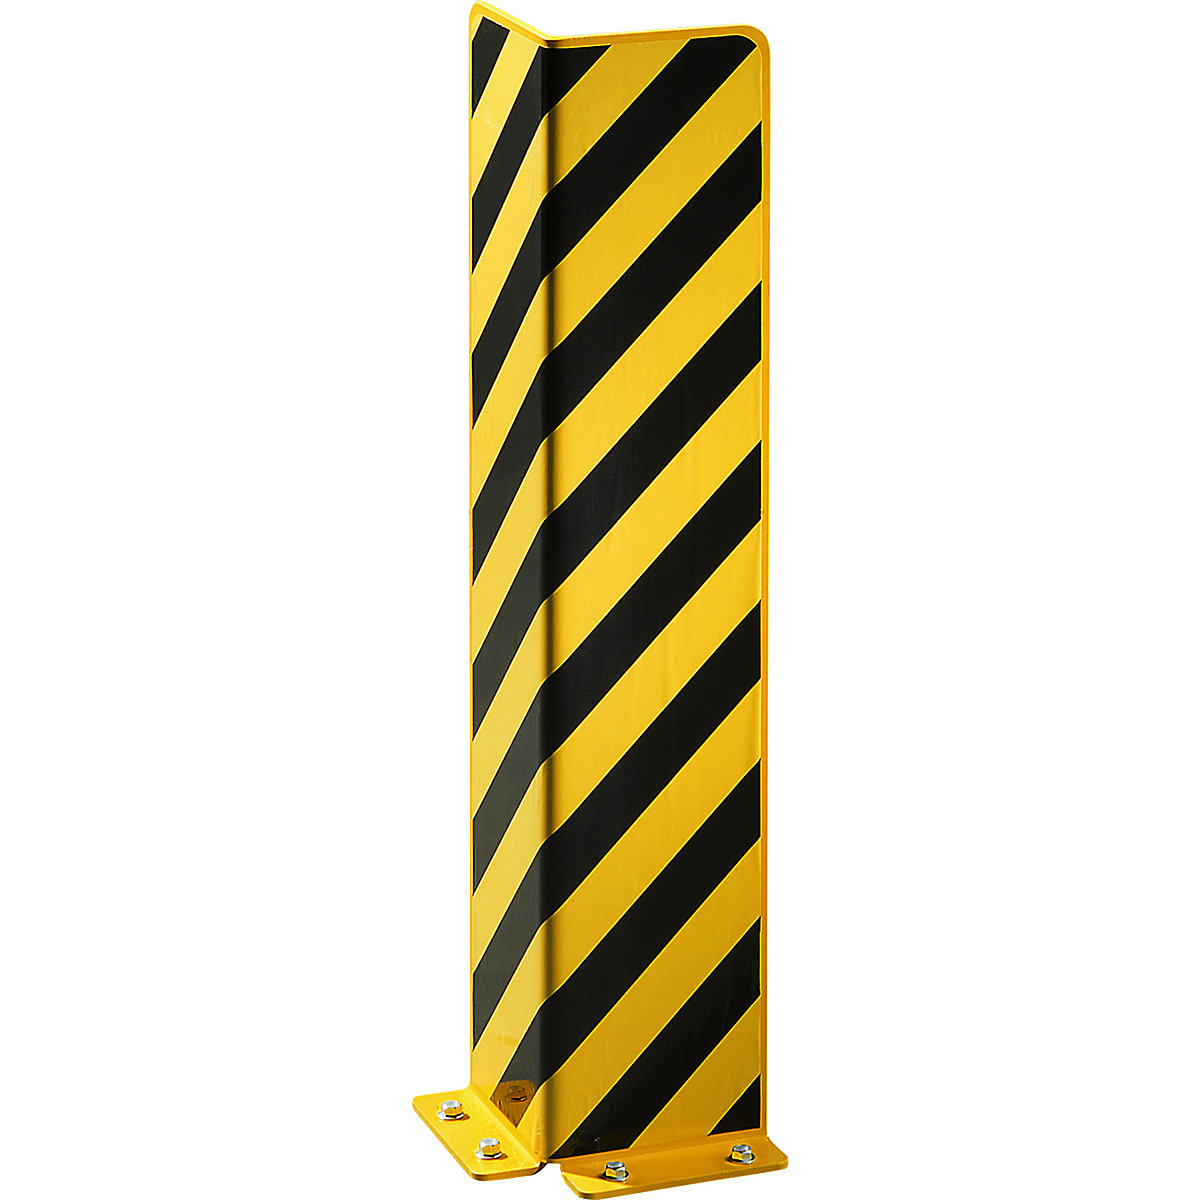 Ütközésvédelem acélból, L-profil, fekete / sárga, magasság 800 mm-4